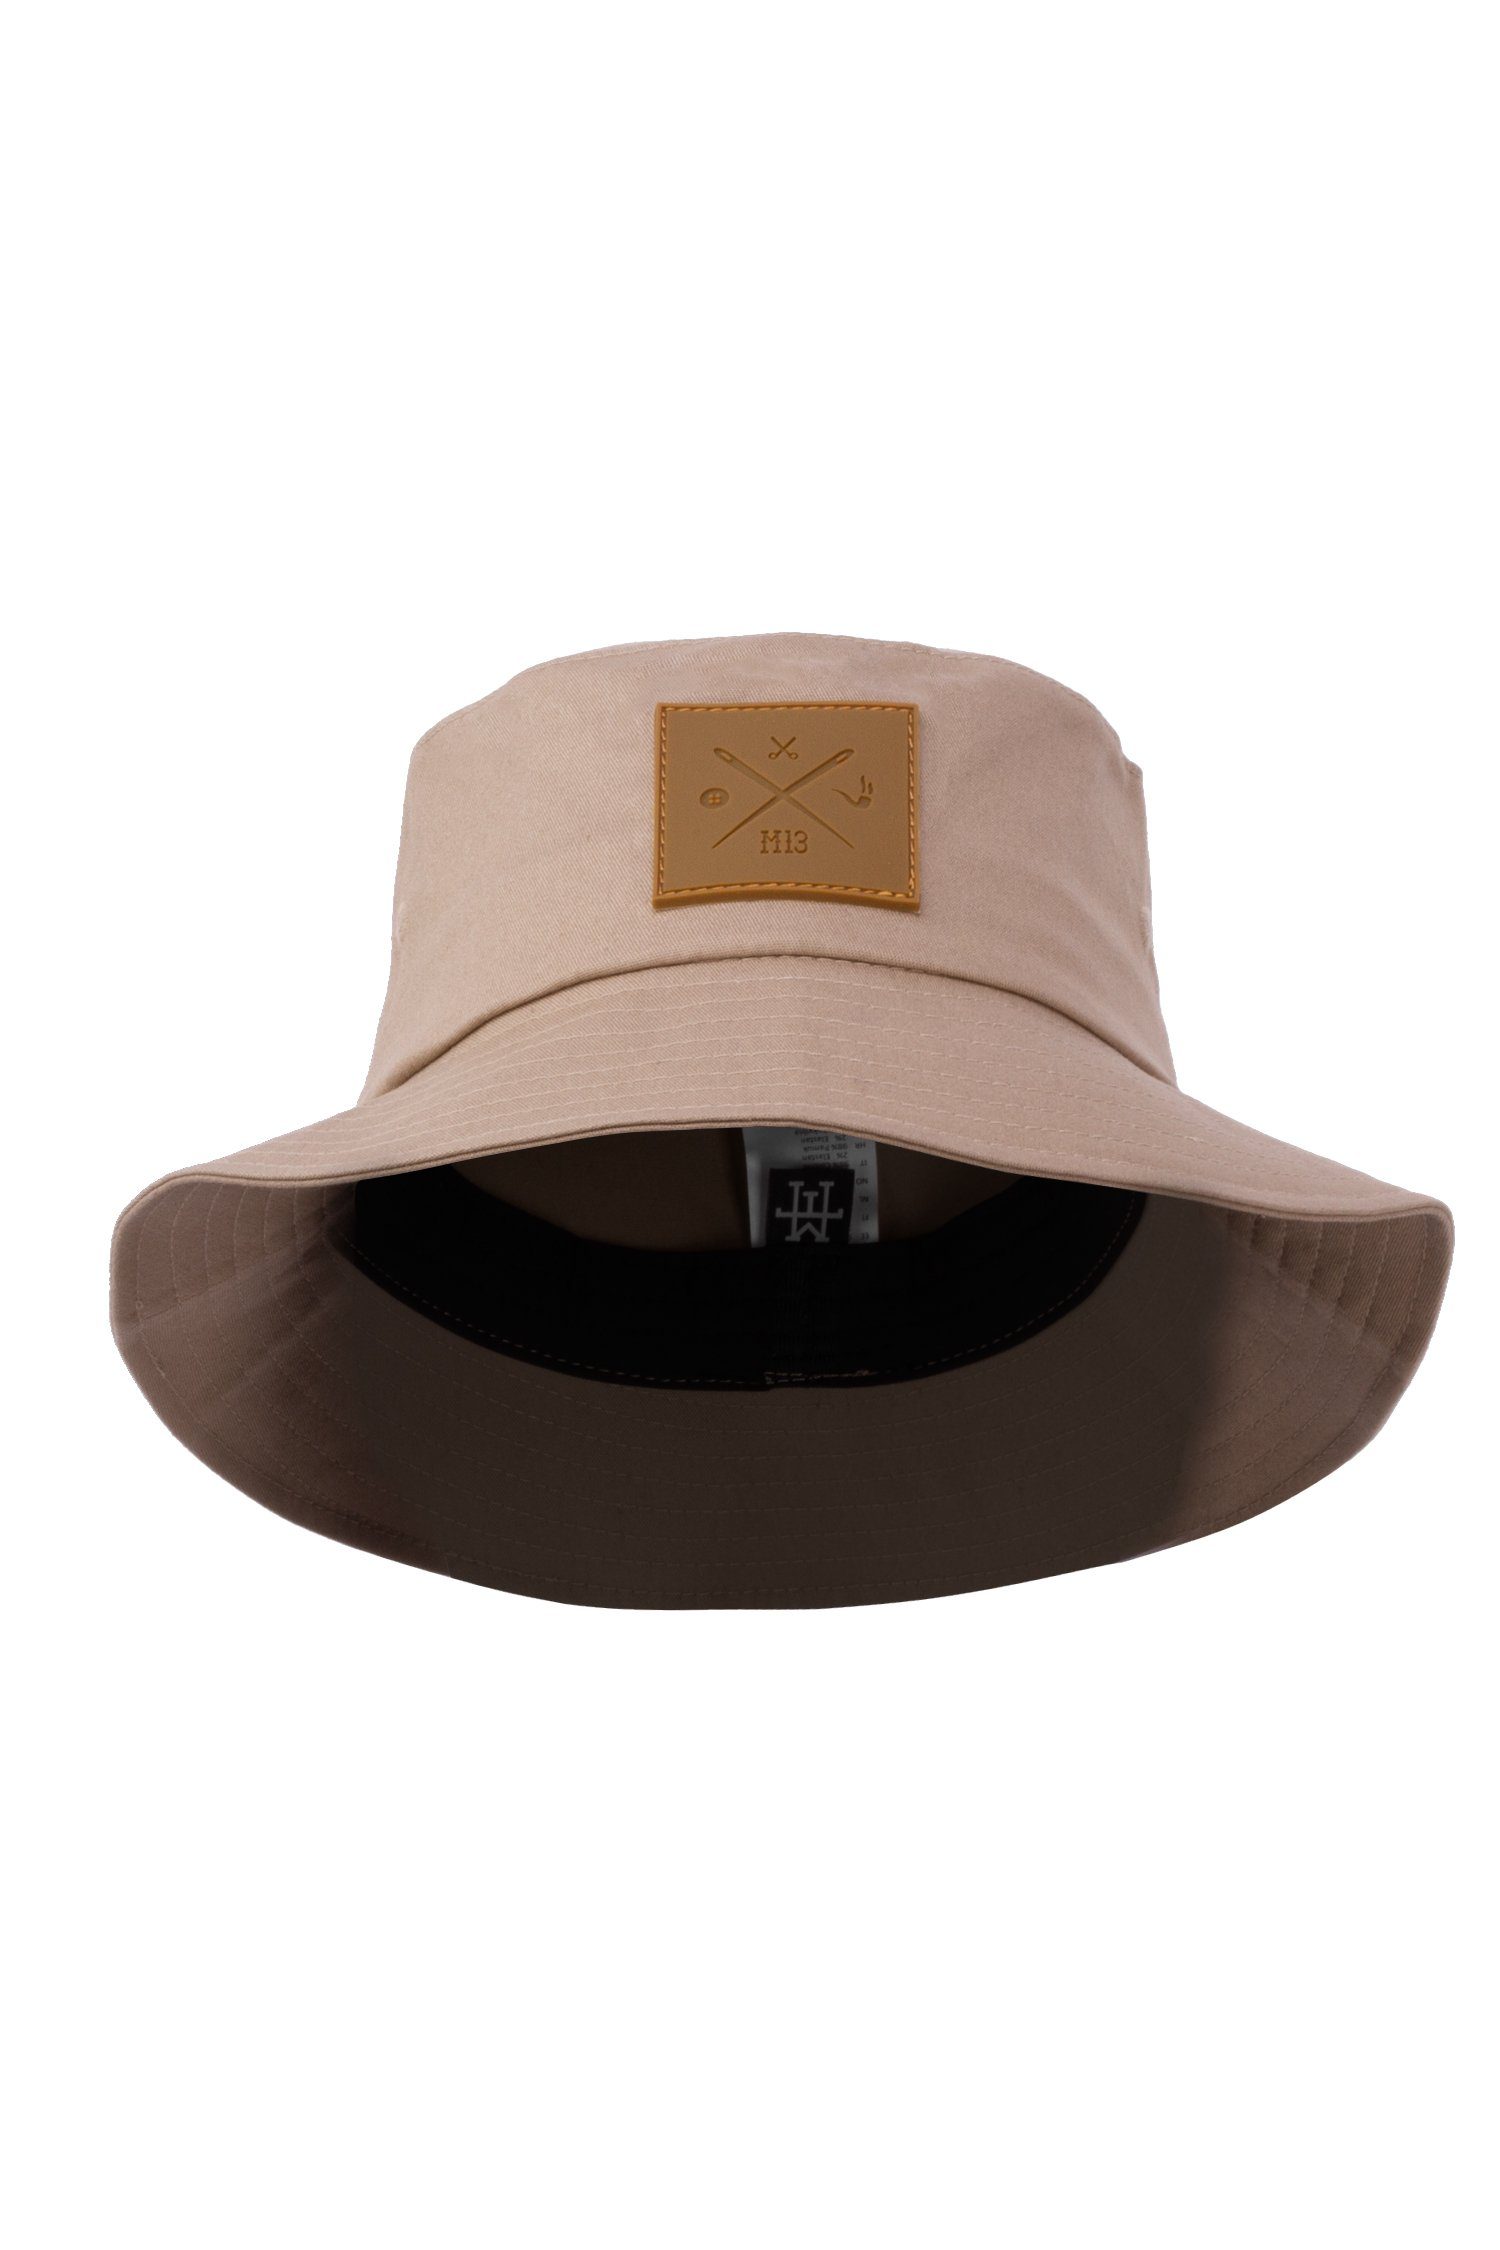 Manufaktur13 Fischerhut M13 Bucket Hat - Anglerhut, Session Hat, Fischermütze 100% Vegan Sand